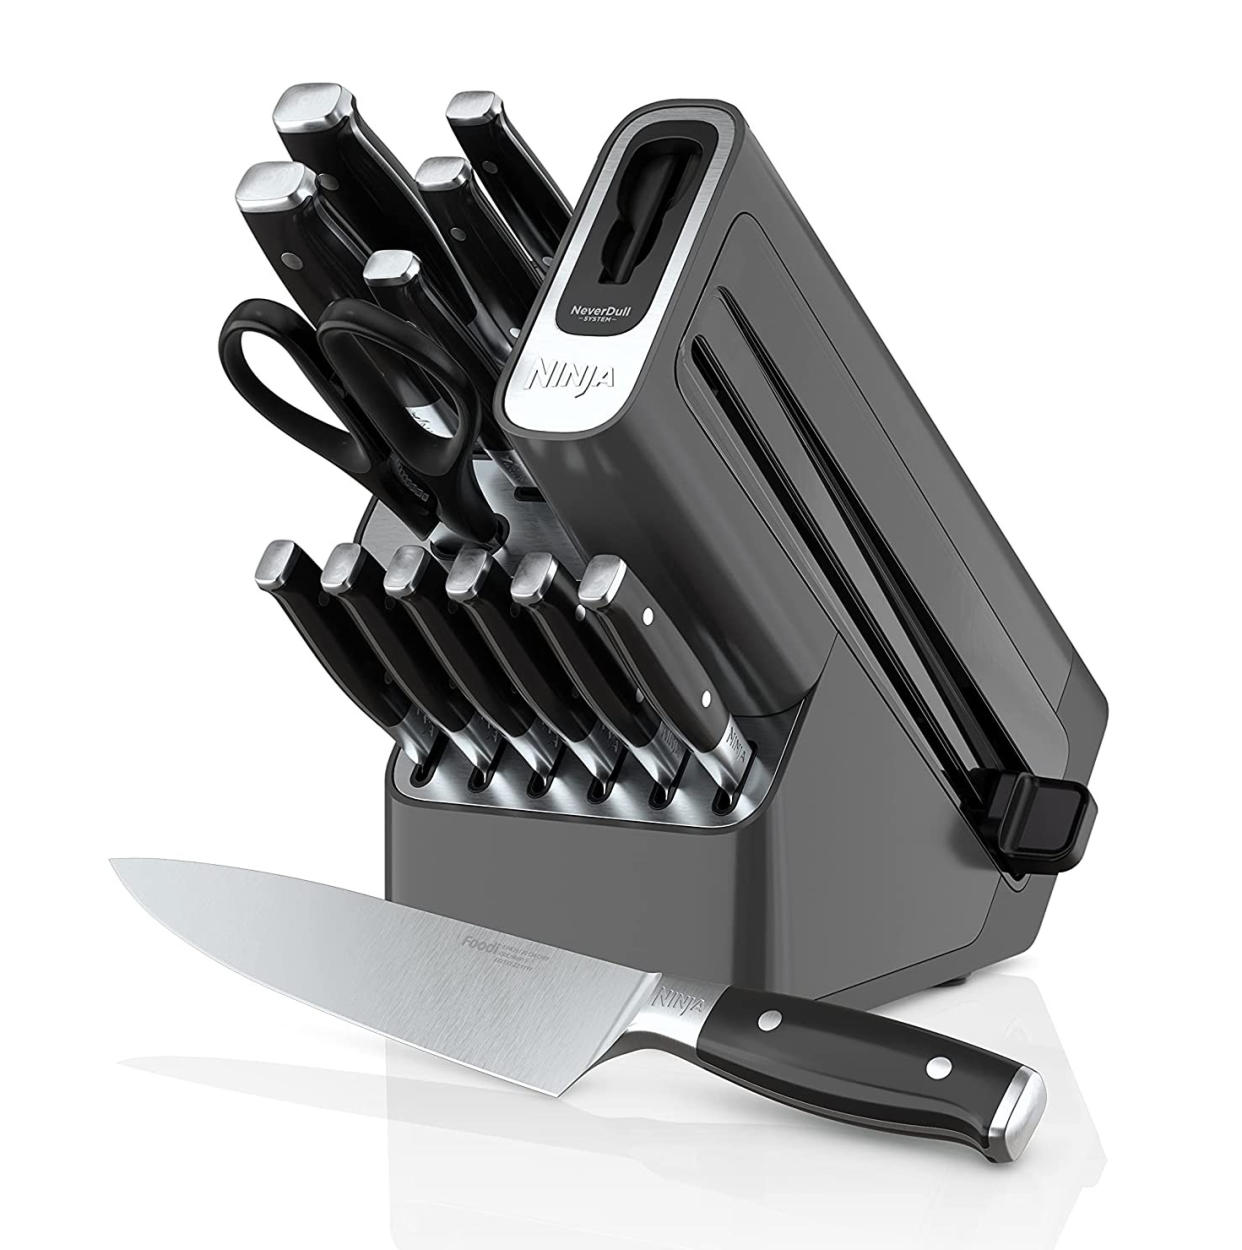 Ninja knife set, prime day kitchen deals